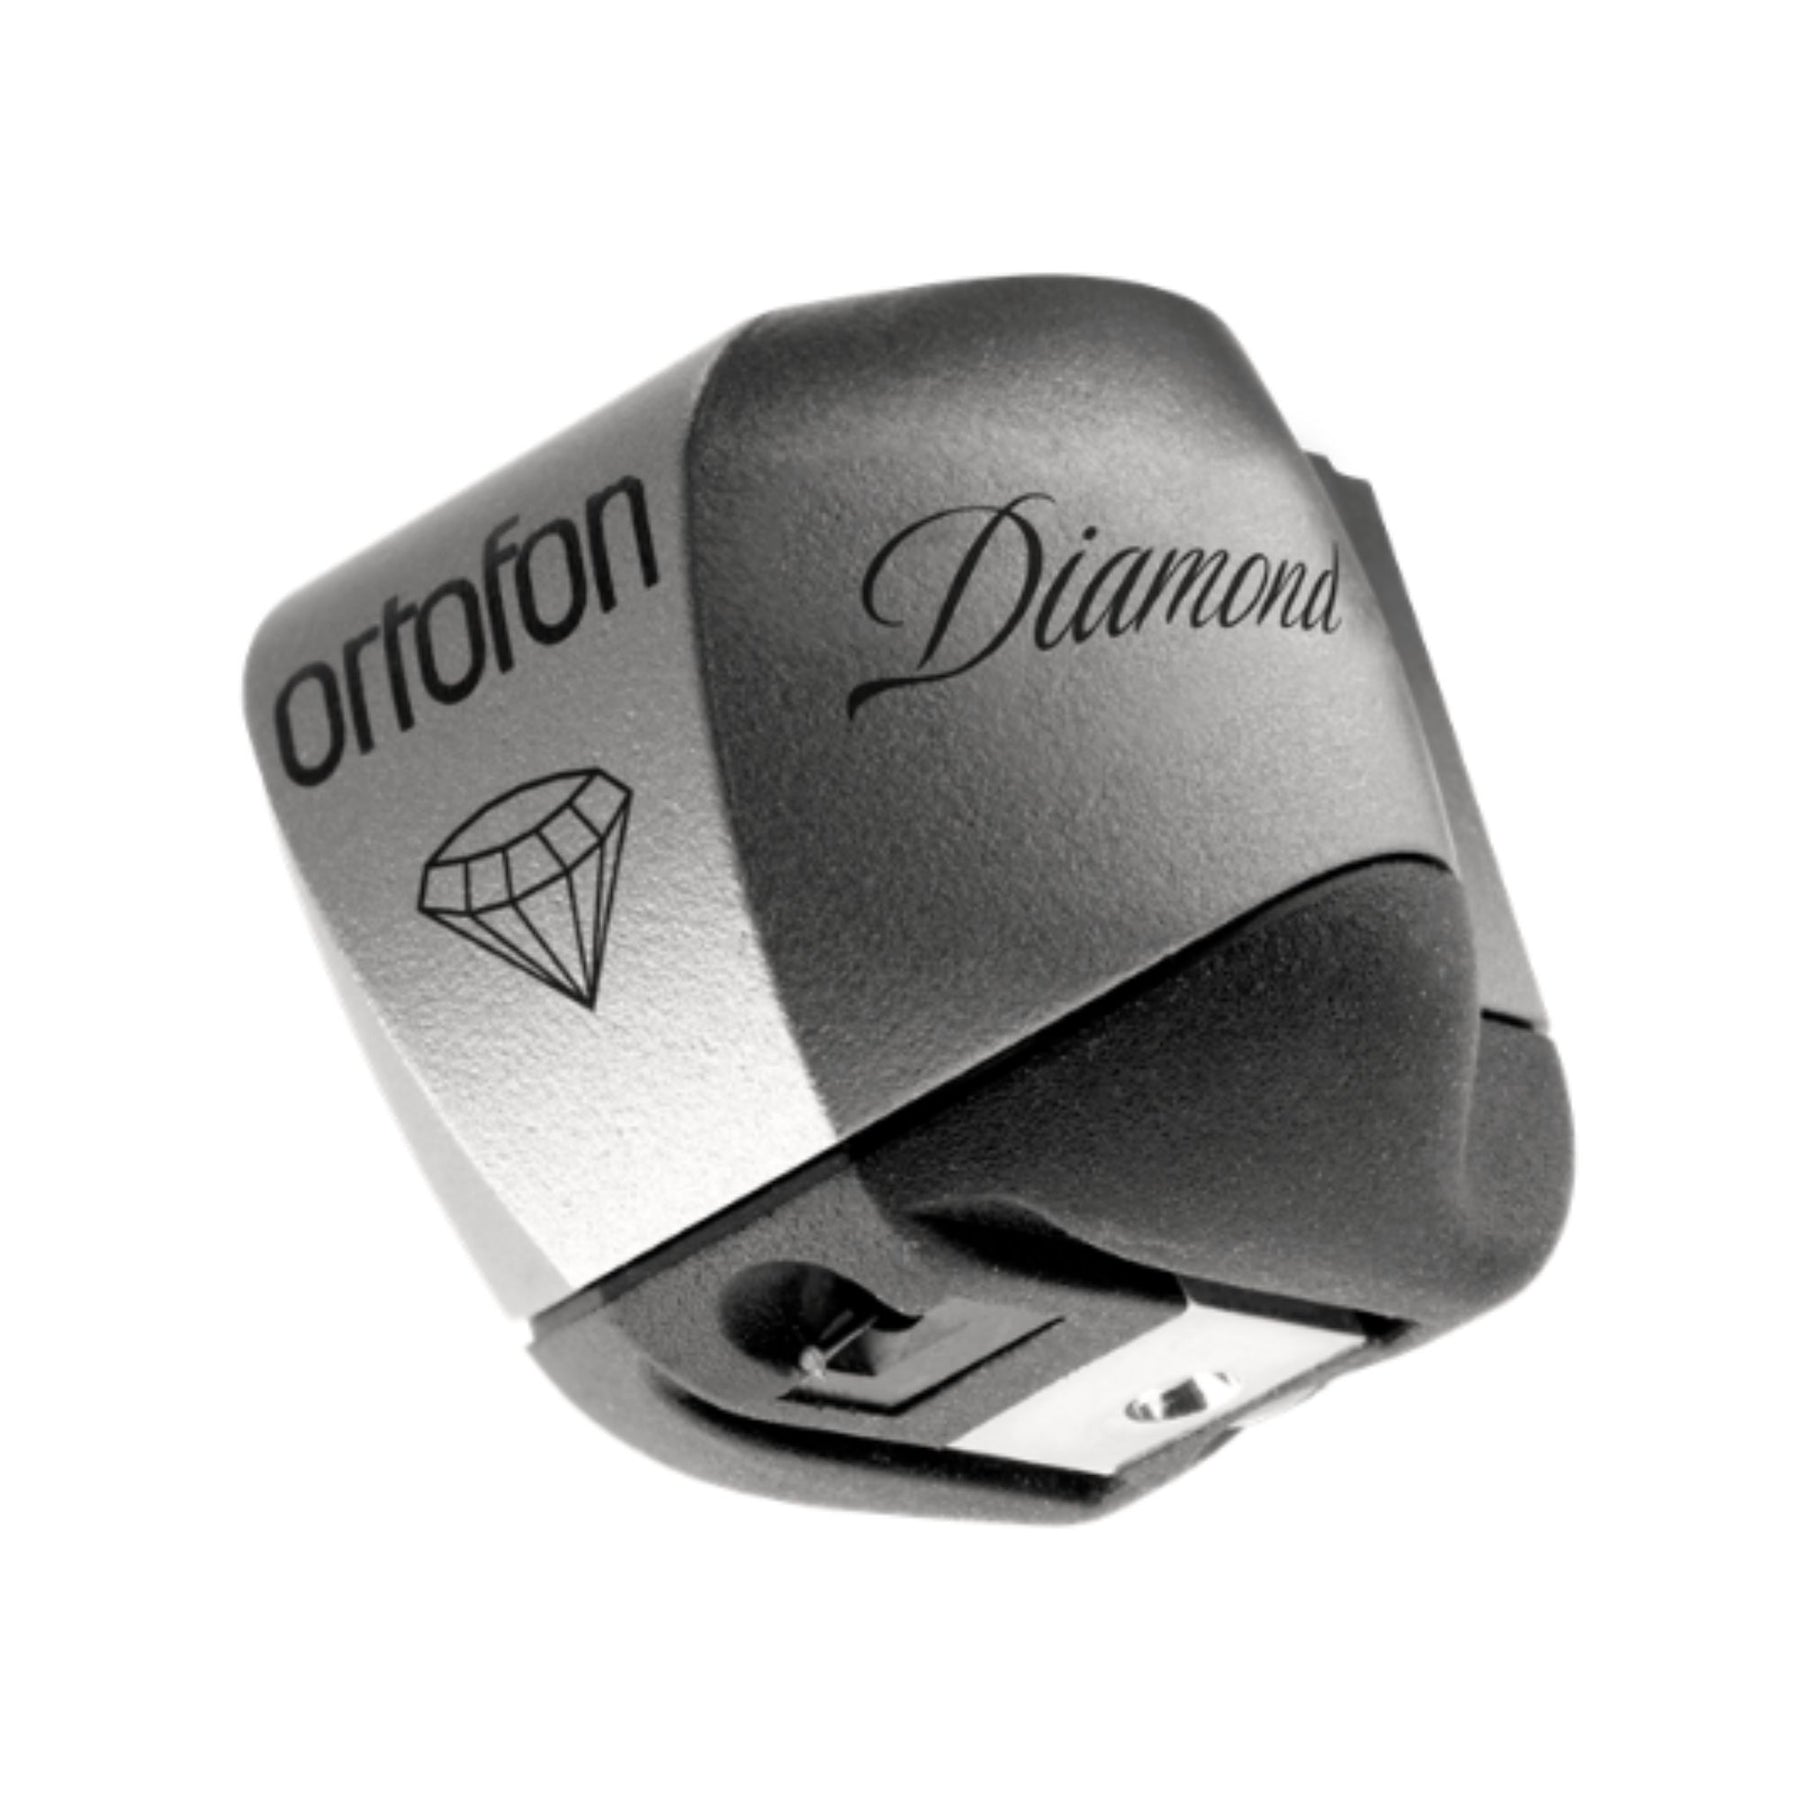 Ortofon MC Diamond - Moving Coil Cartridge, Ortofon, Turntable Accessories - AVStore.in